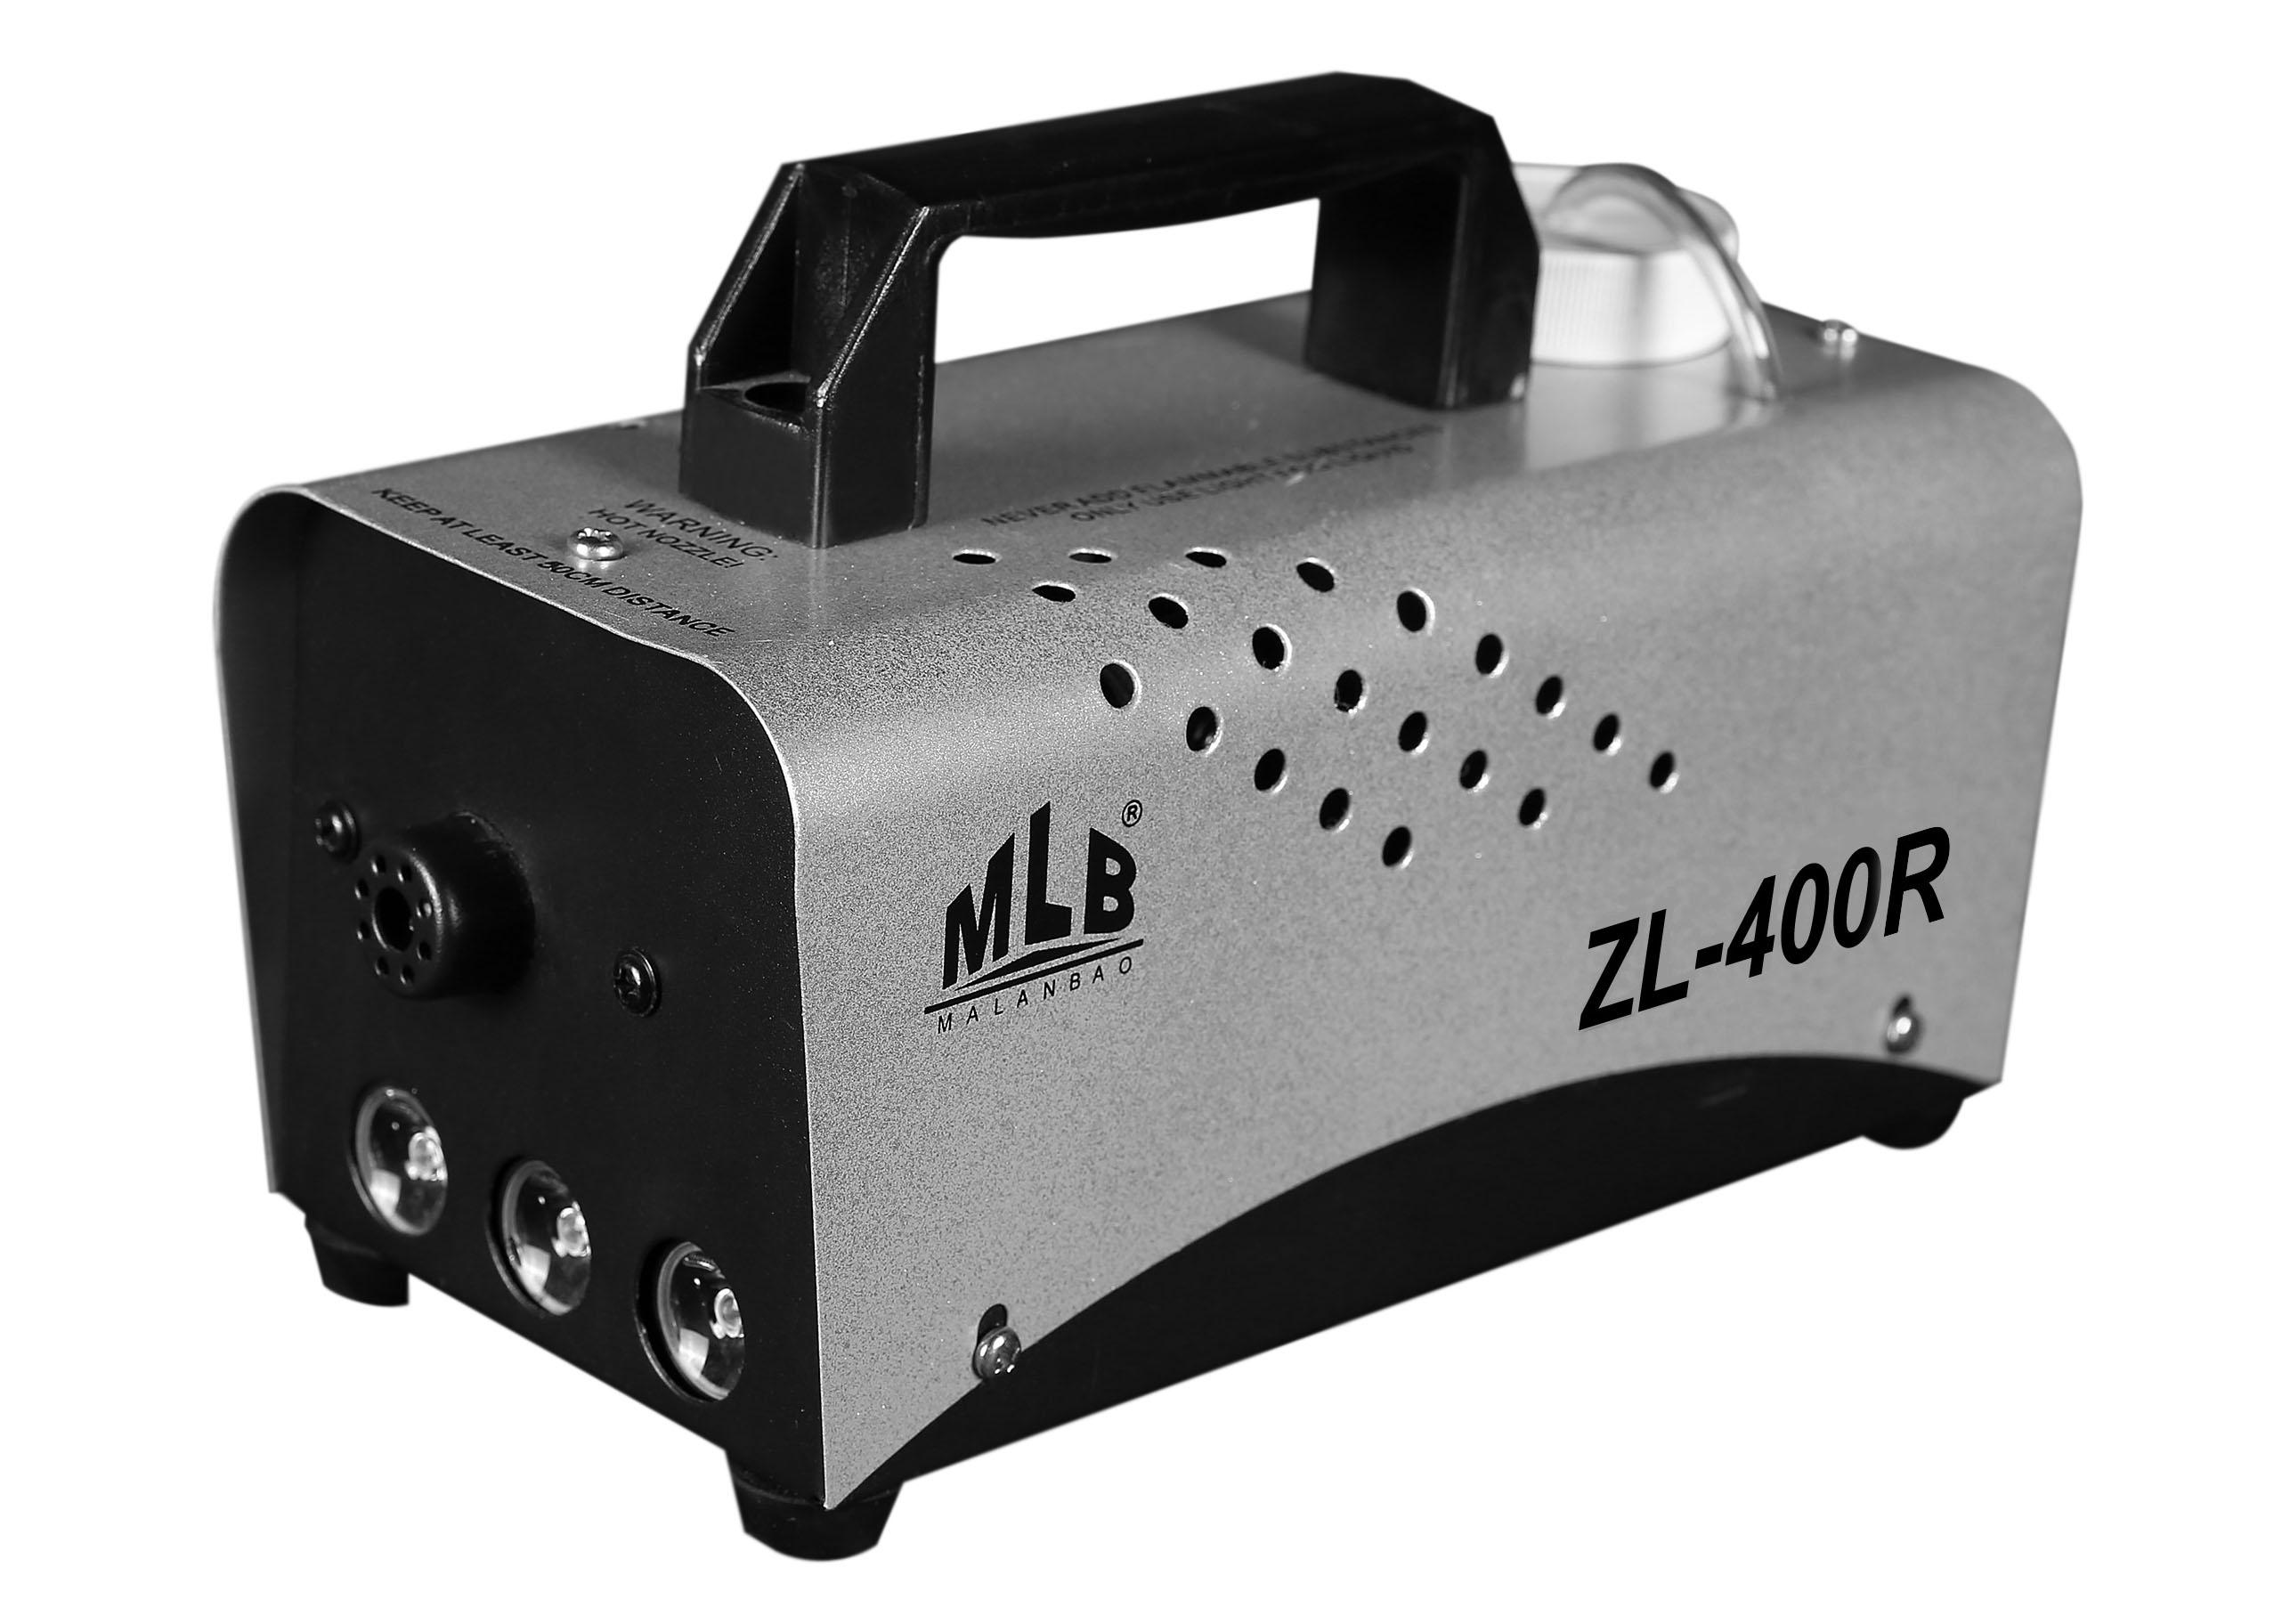 MLB ZL-400R. Компактный генератор дыма со светодиодной подсветкой красного цвета. Нагреватель 400Вт, подсветка LED 3 x 3Вт, габариты 23x11x11см, вес 1,5кг